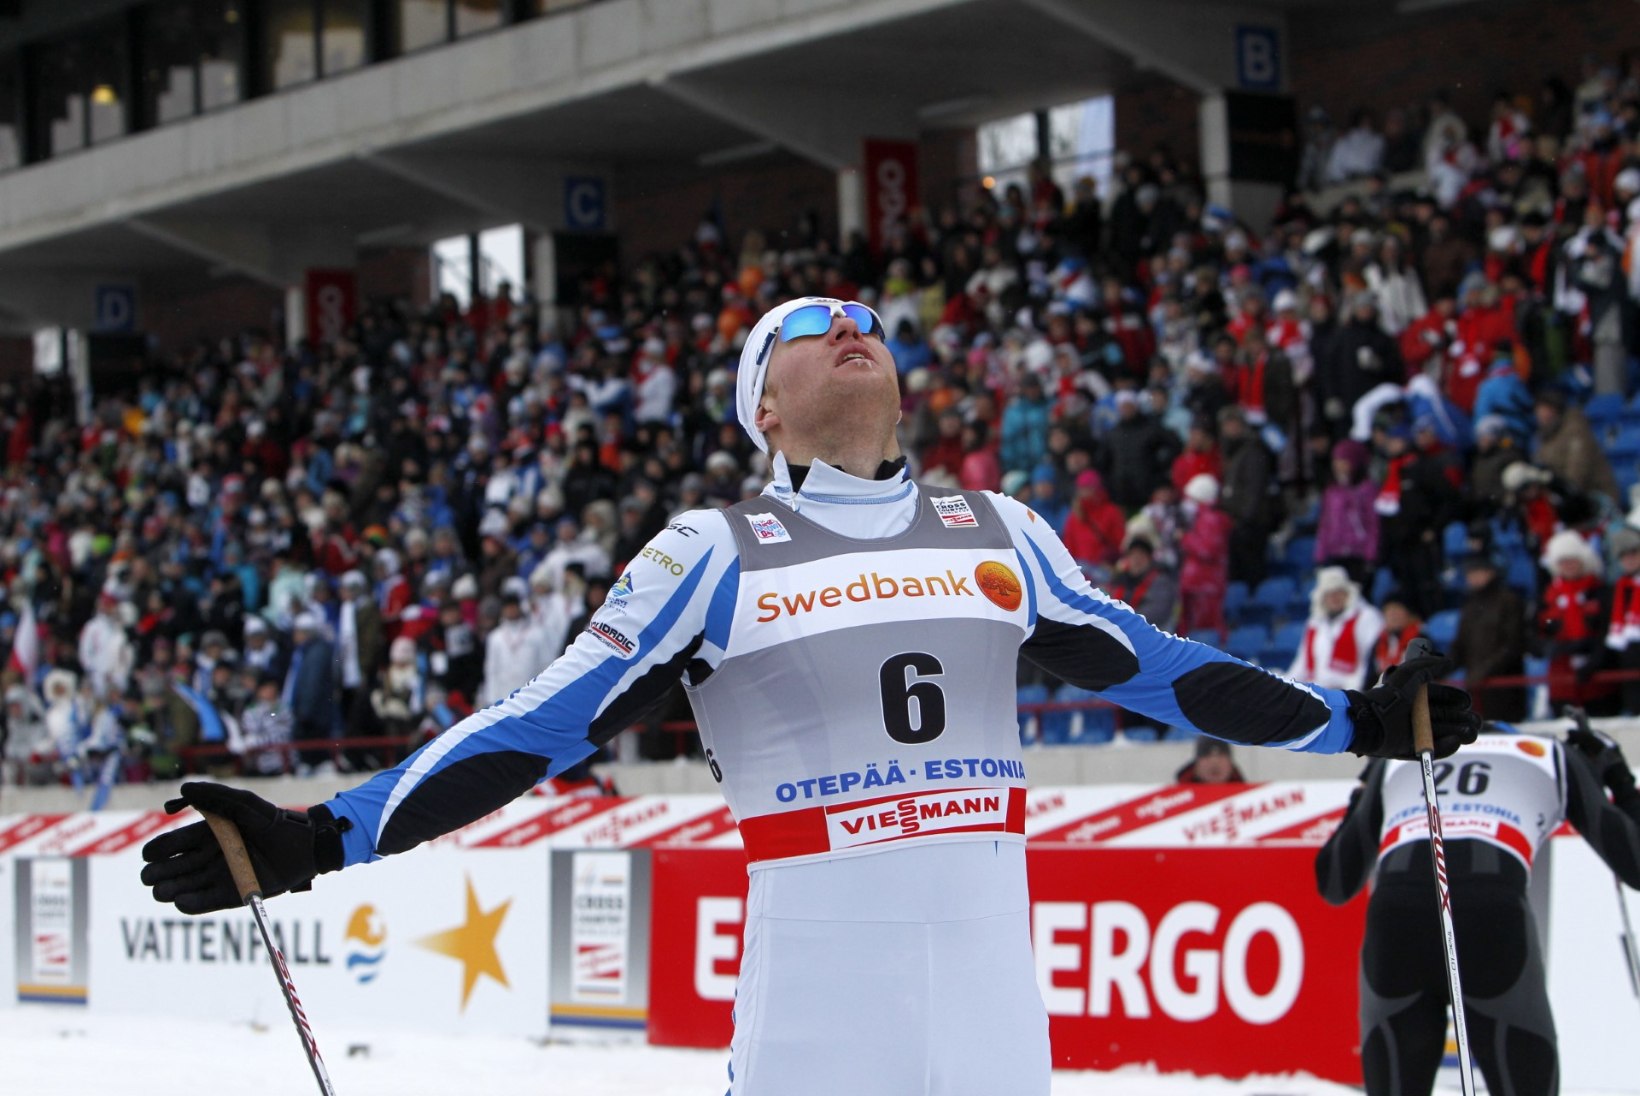 Eesti sprinterid ei jõudnud jälle eelsõidust edasi, võidud Norrasse